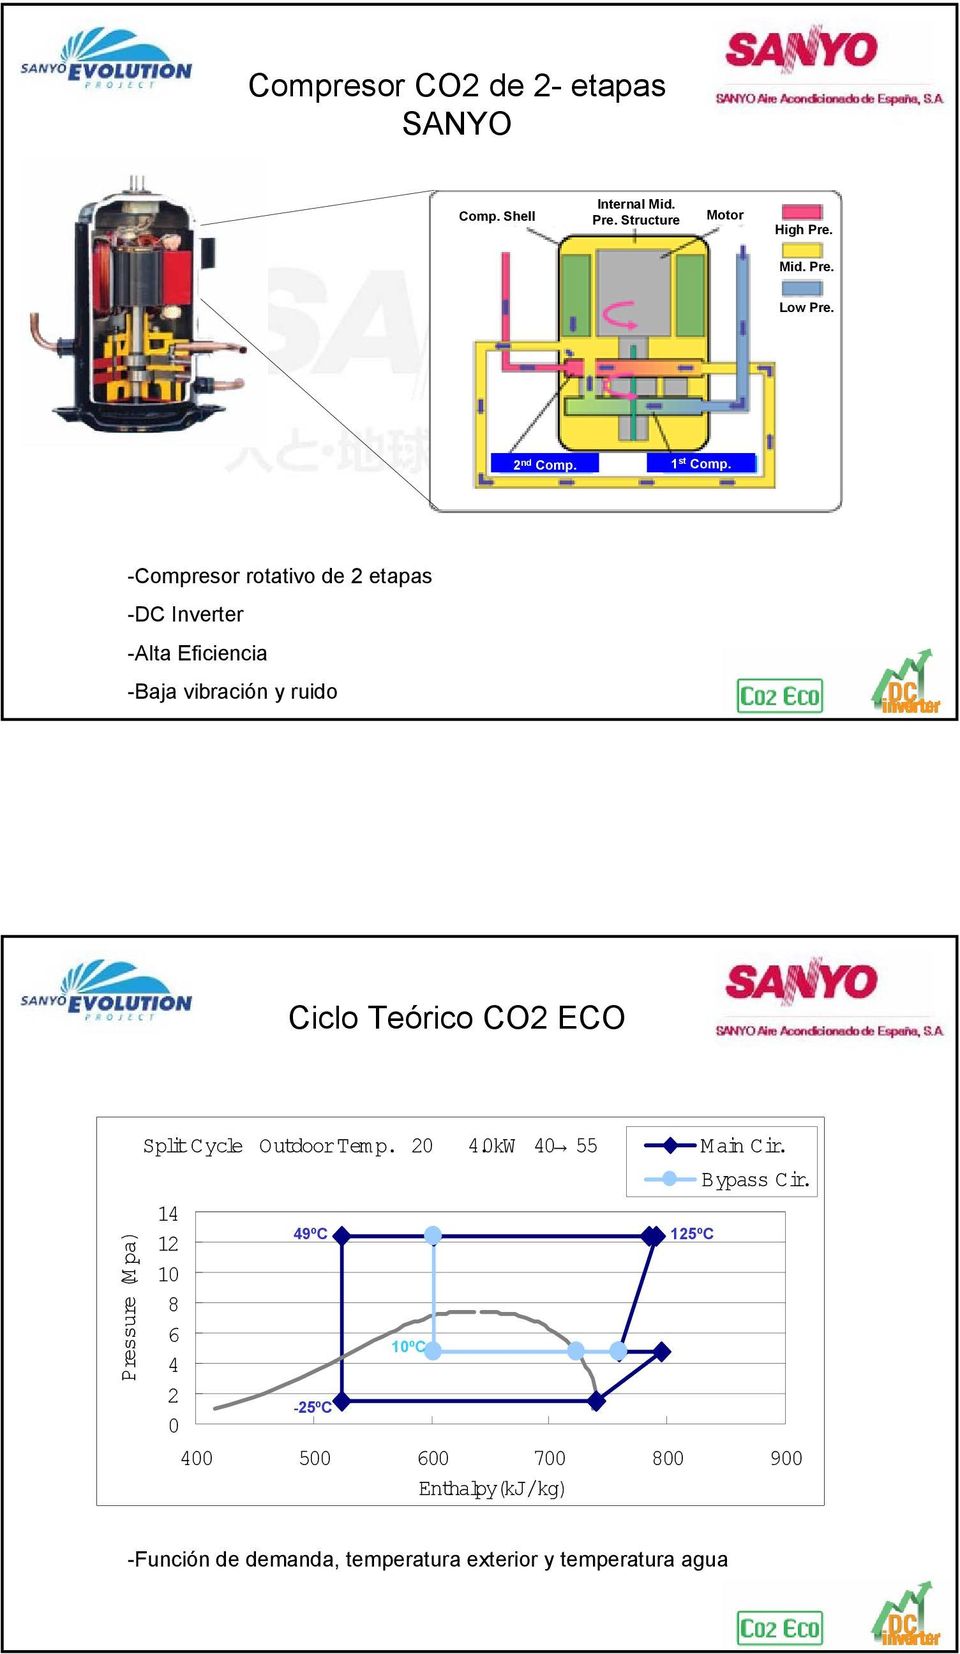 -Compresor rotativo de 2 etapas -DC Inverter -Alta Eficiencia -Baja vibración y ruido Ciclo Teórico CO2 ECO